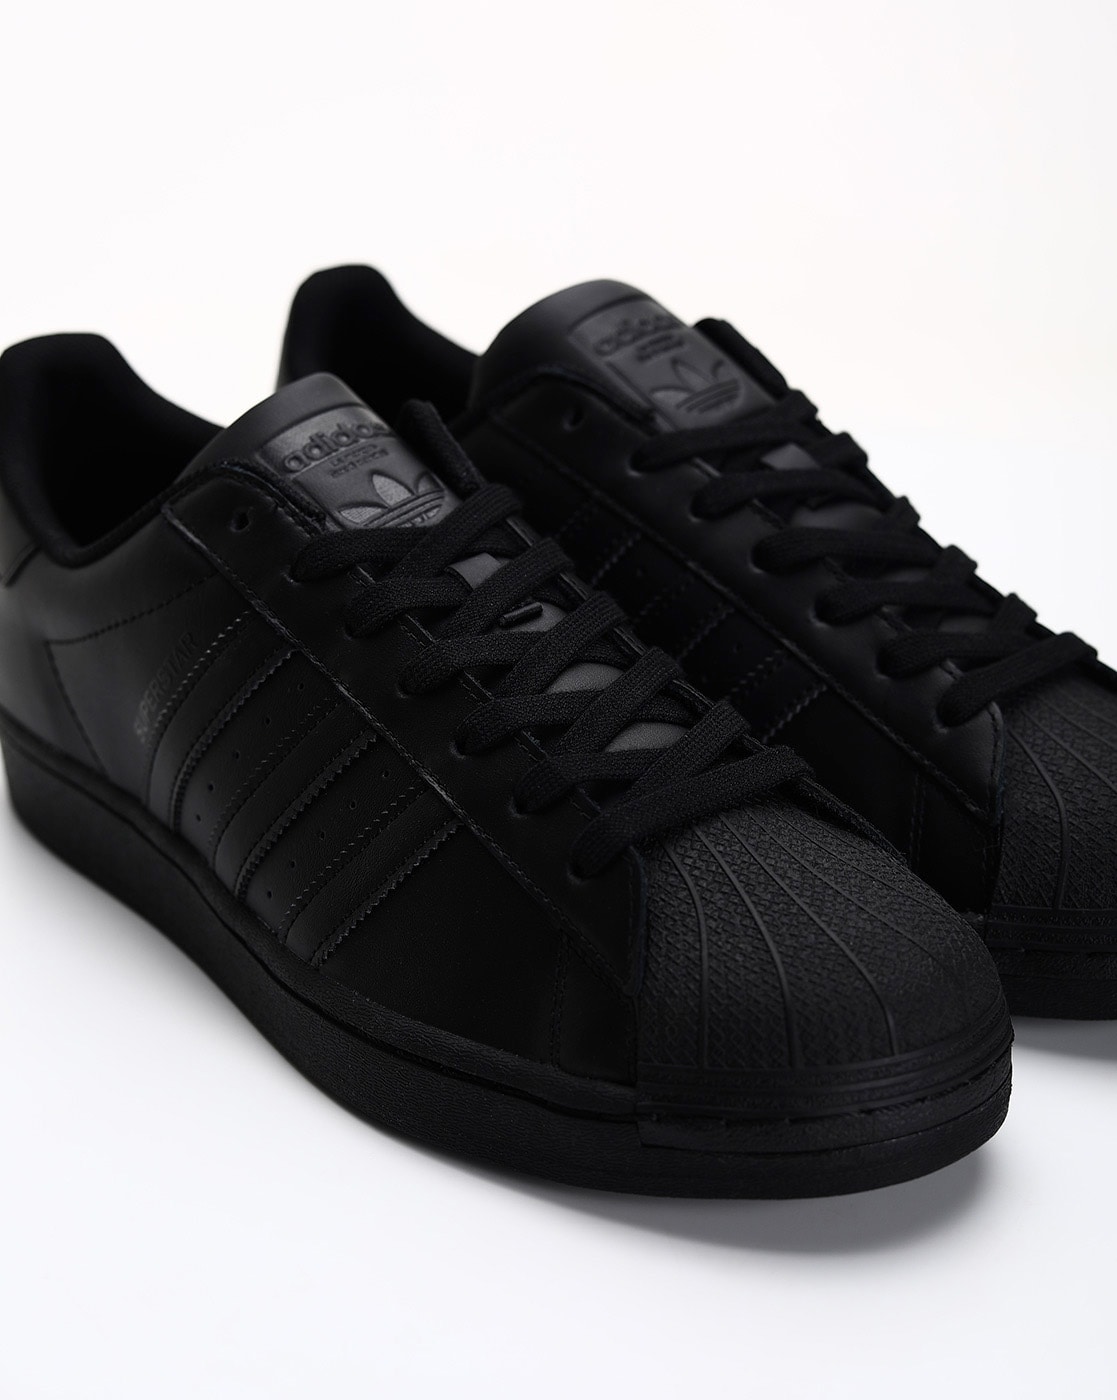 Buy Black Sneakers for Men by Adidas Originals Online | Ajio.com